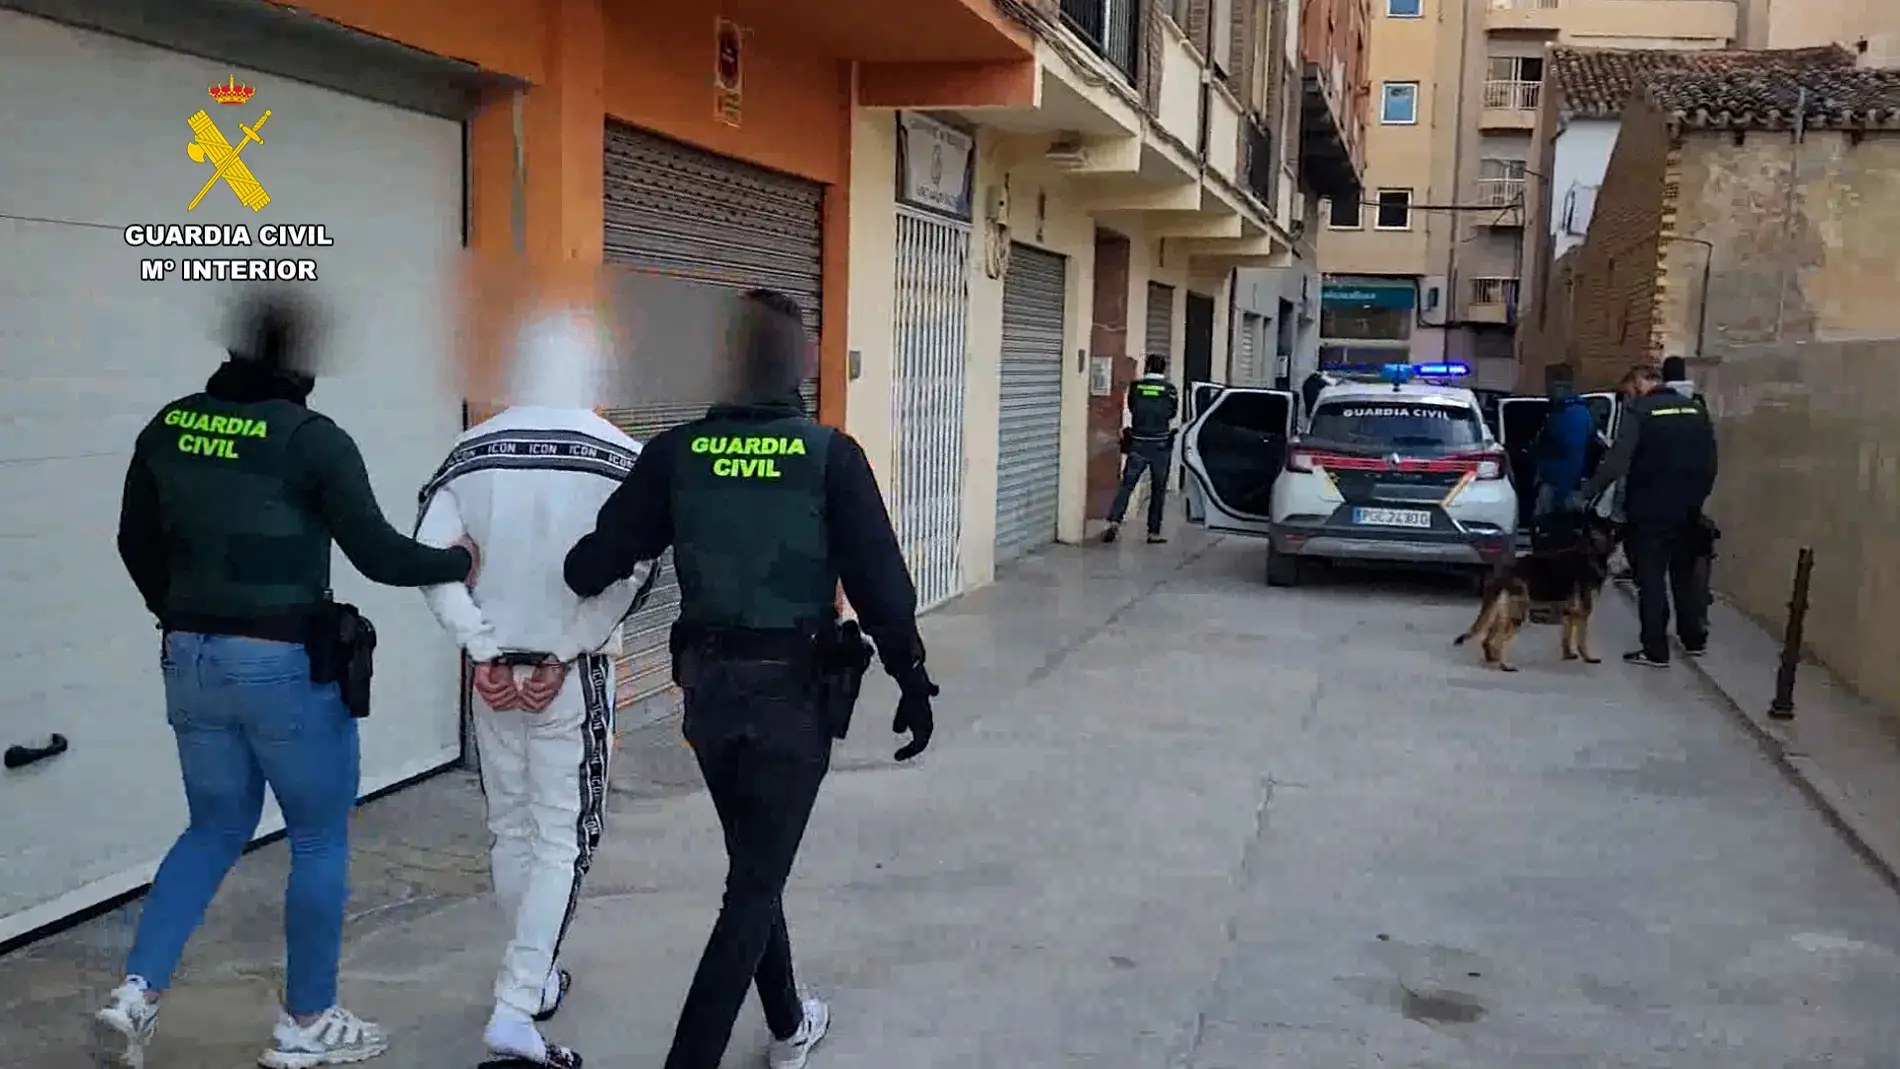 La Guardia Civil detiene en Callosa de Ensarriá y La Nucia a cuatro personas acusados de 21 delitos de robo con fuerza